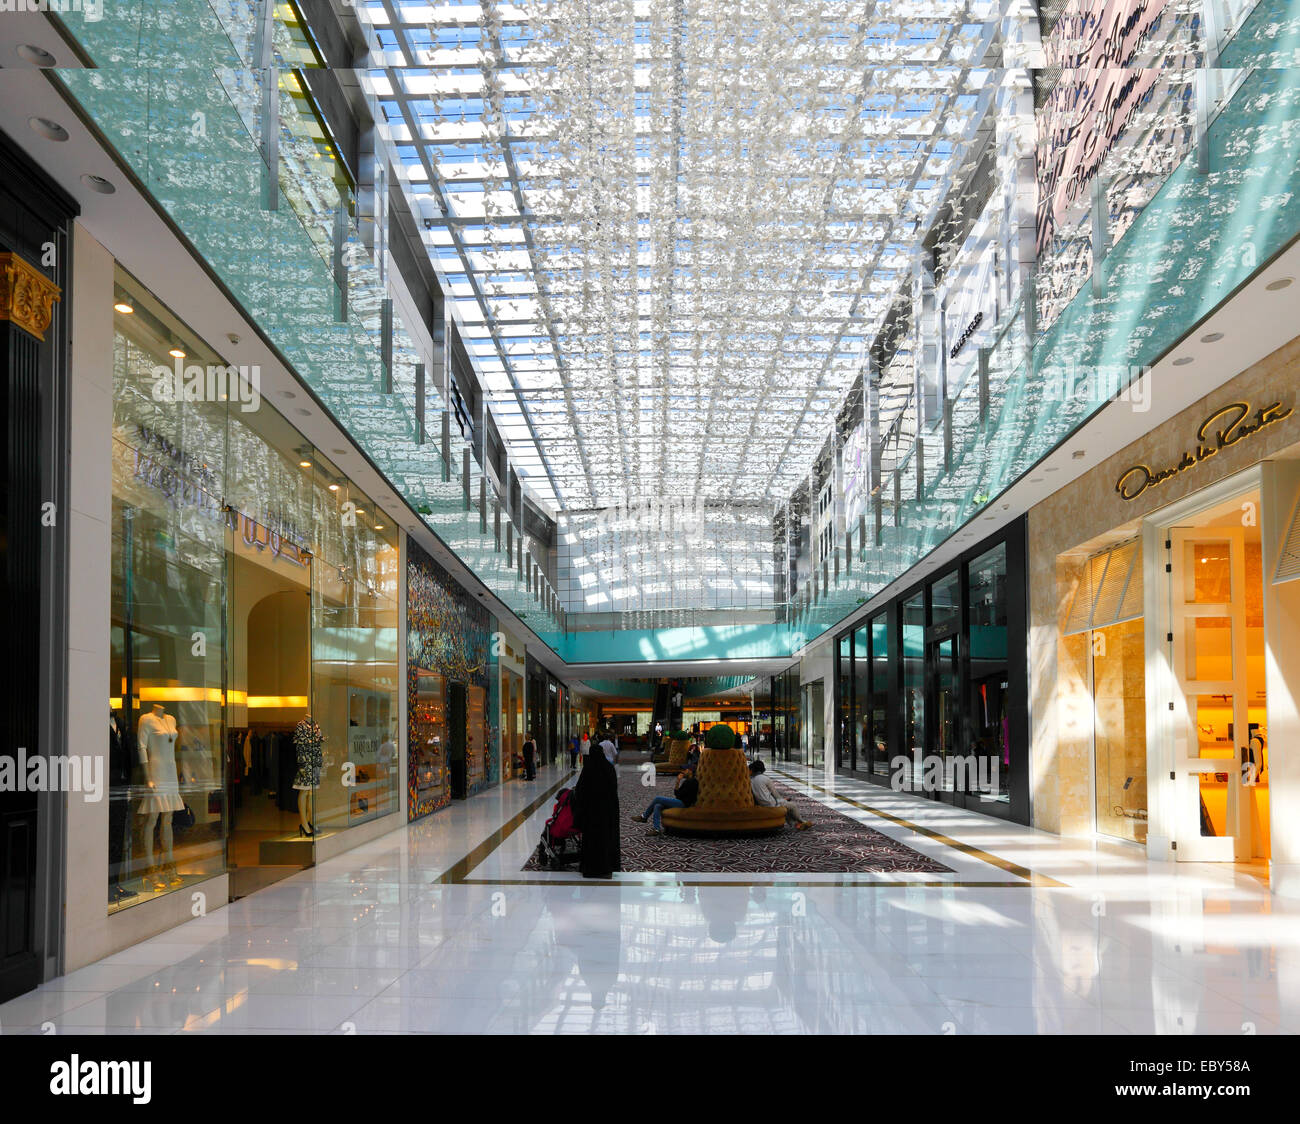 Dubai, Shopping mall (near Burj Khalifa) Stock Photo